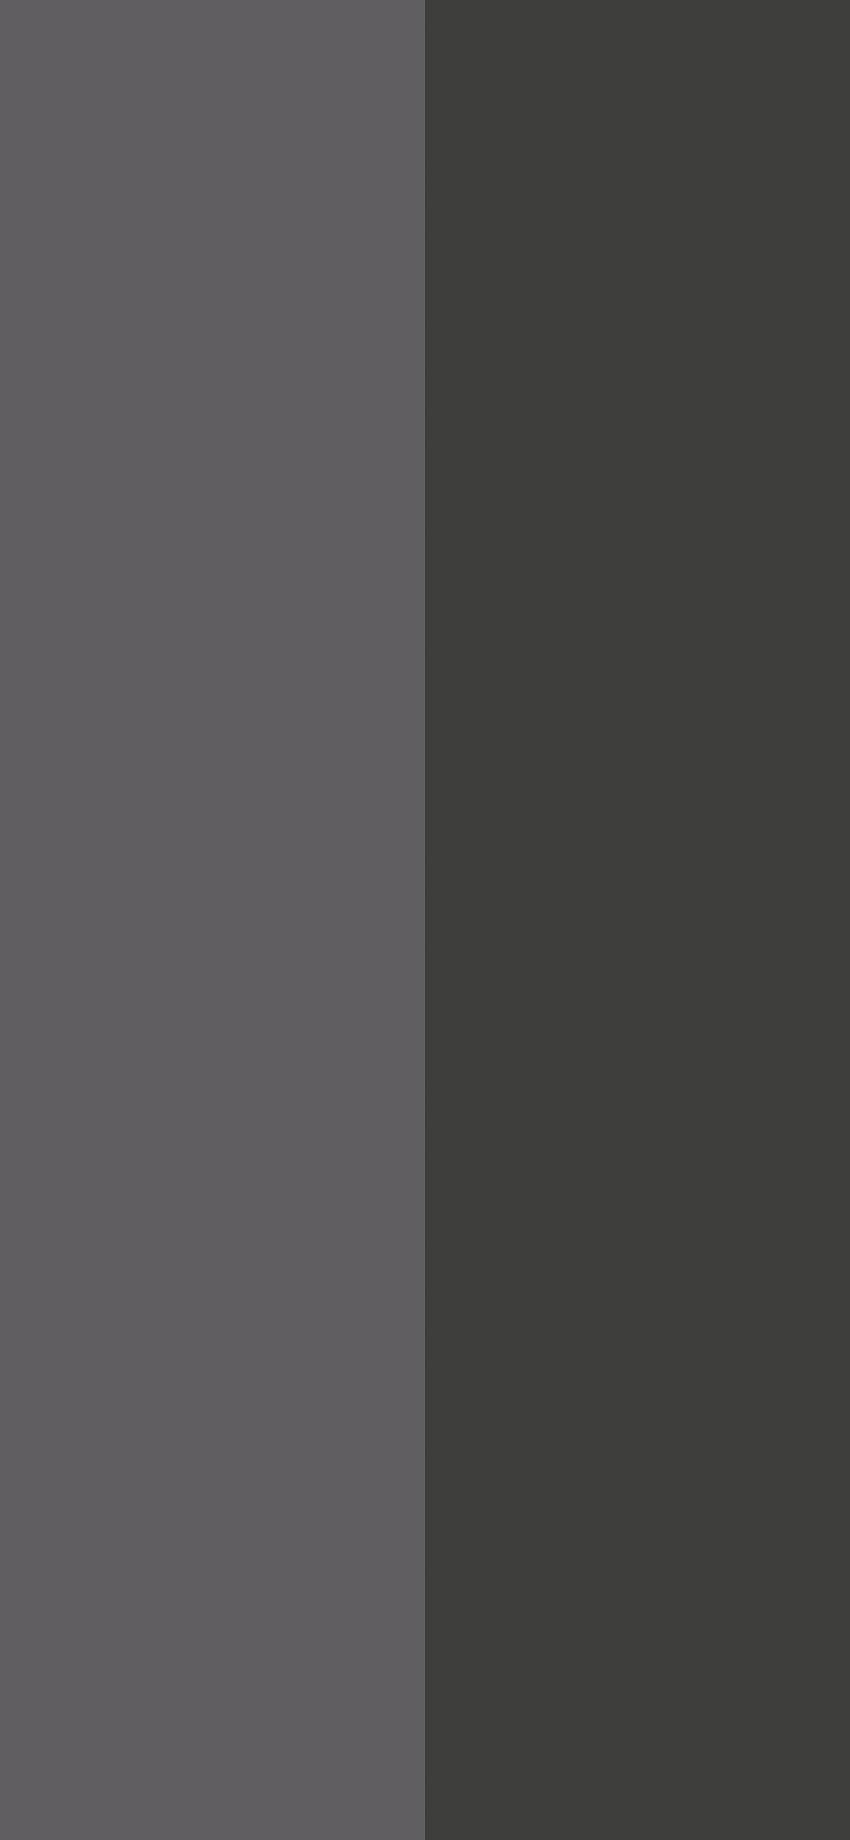 Duo iPhone z podzielonymi kolorami, pół ekranu Tapeta na telefon HD